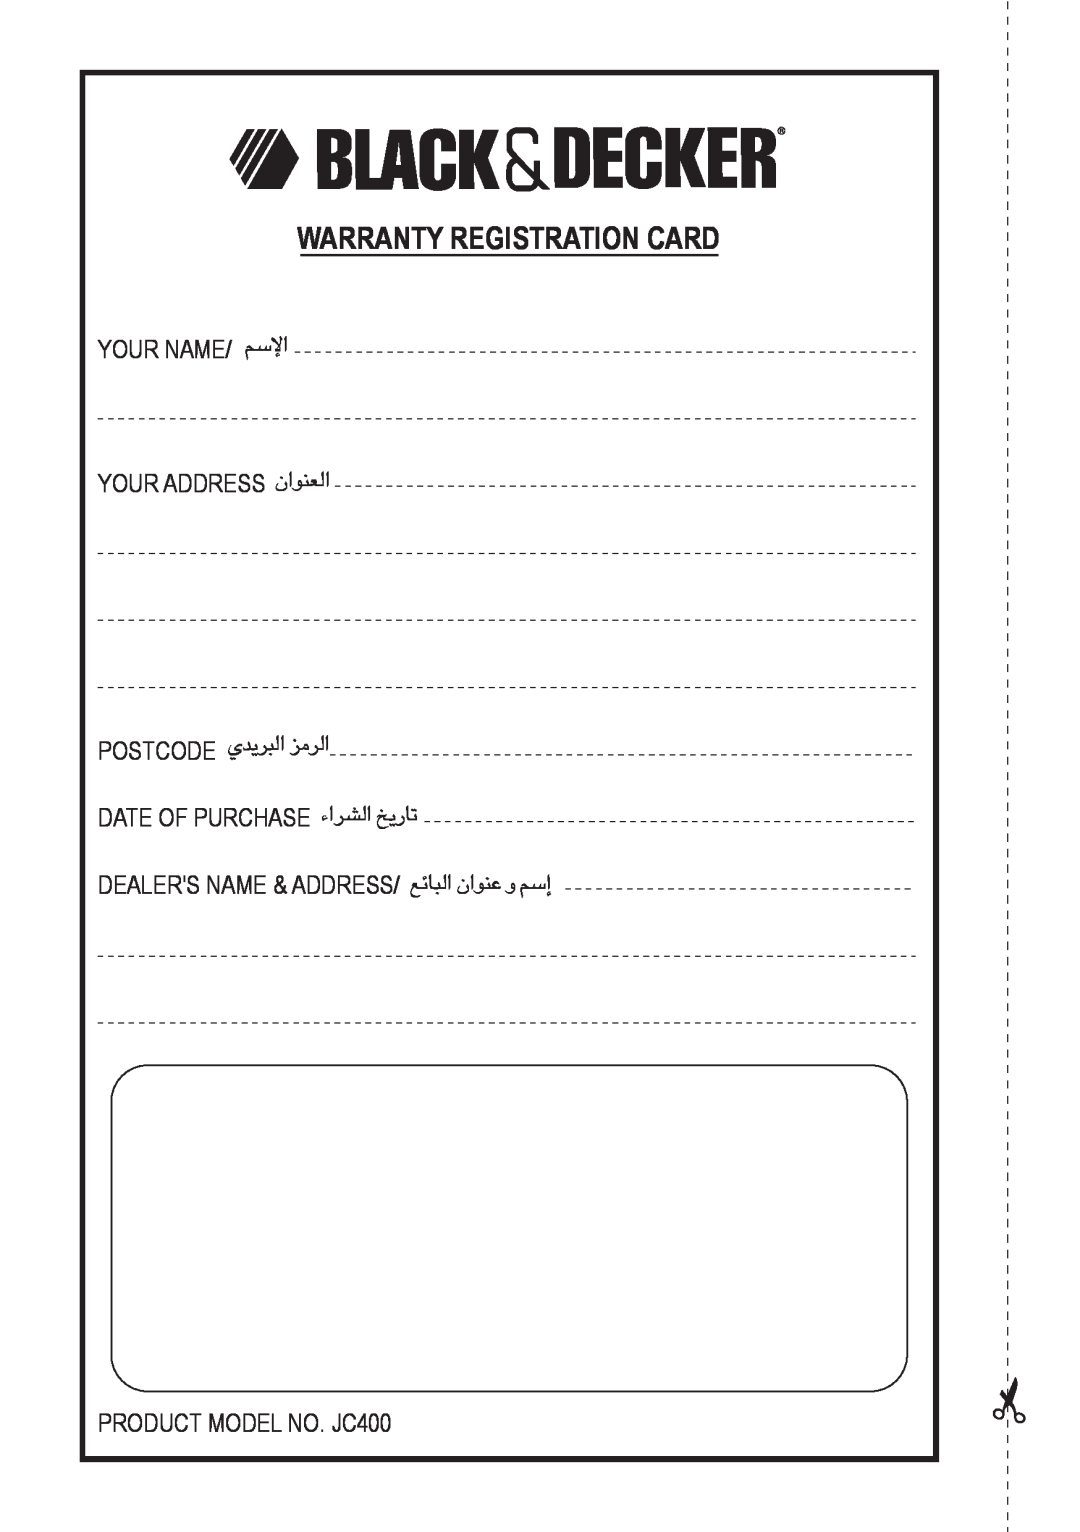 Black & Decker JC400 manual Warranty Registration Card, «ùßr 